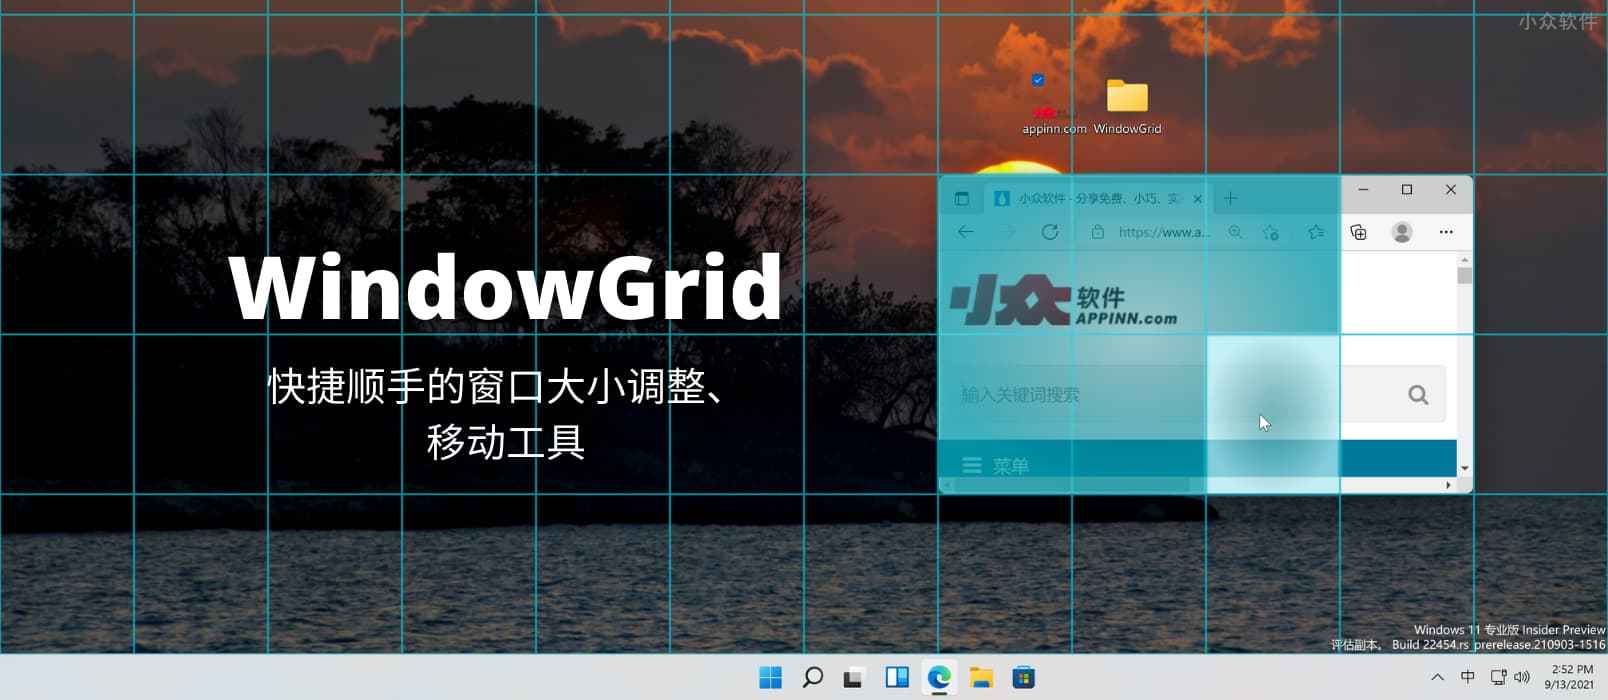 WindowGrid – 快捷顺手的调整窗口大小、移动窗口工具[Windows]